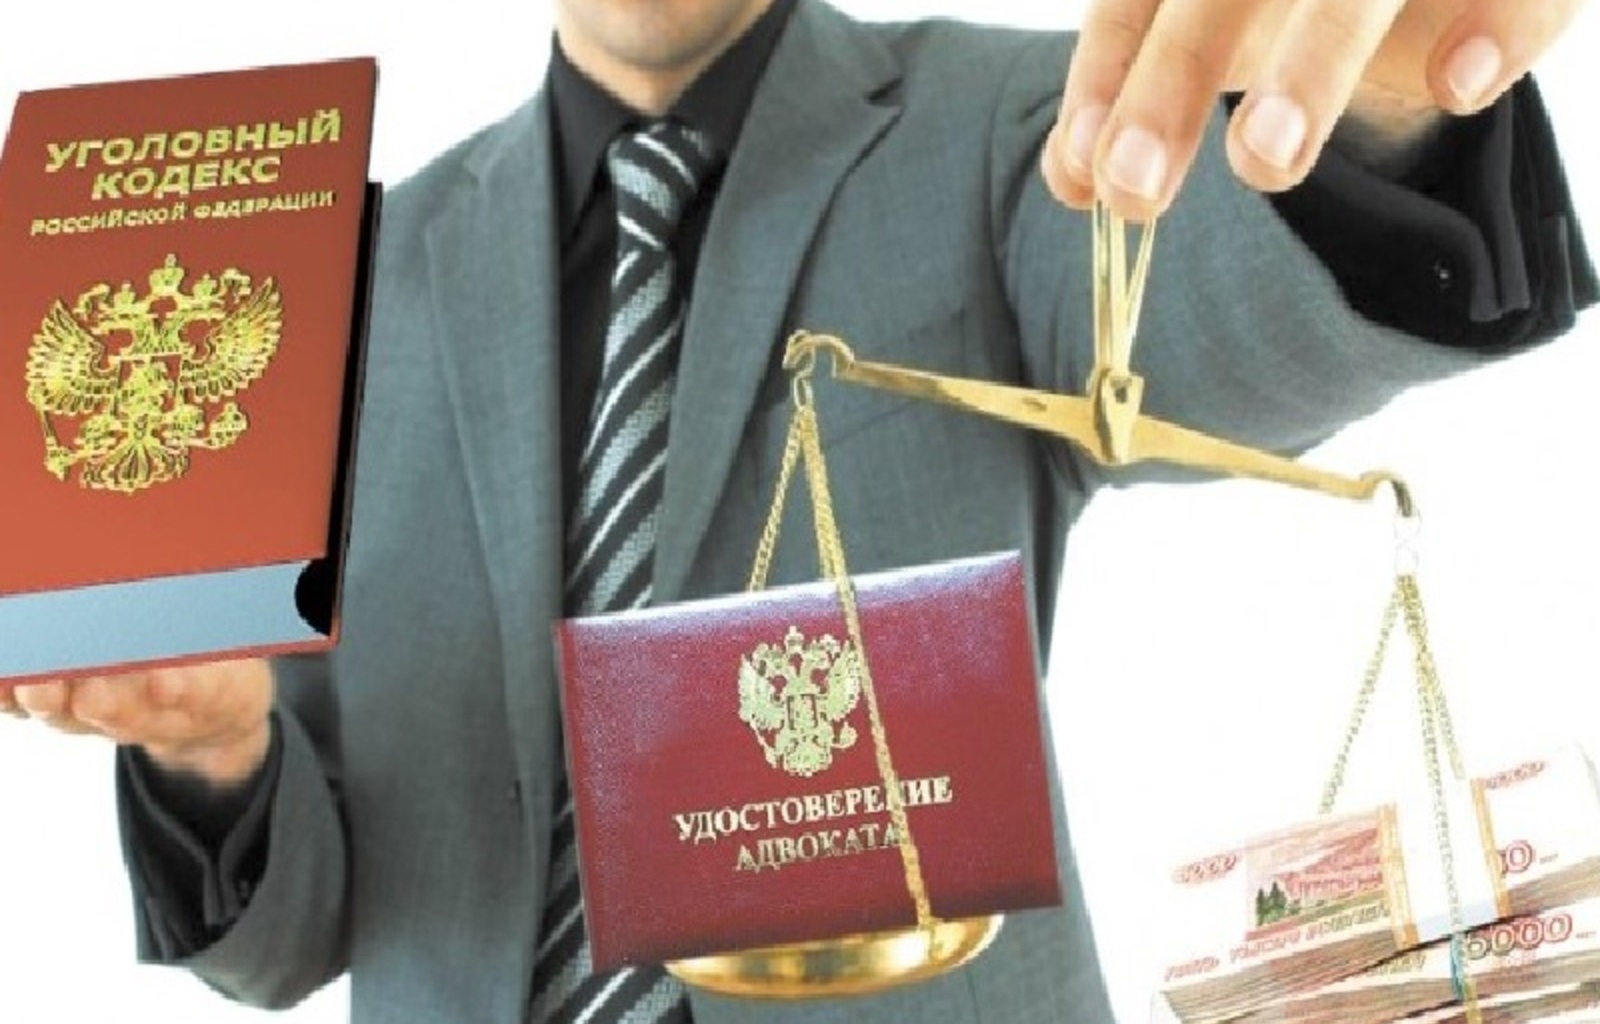 Во Владикавказе три адвоката получали деньги за фиктивную юридическую помощь подзащитным